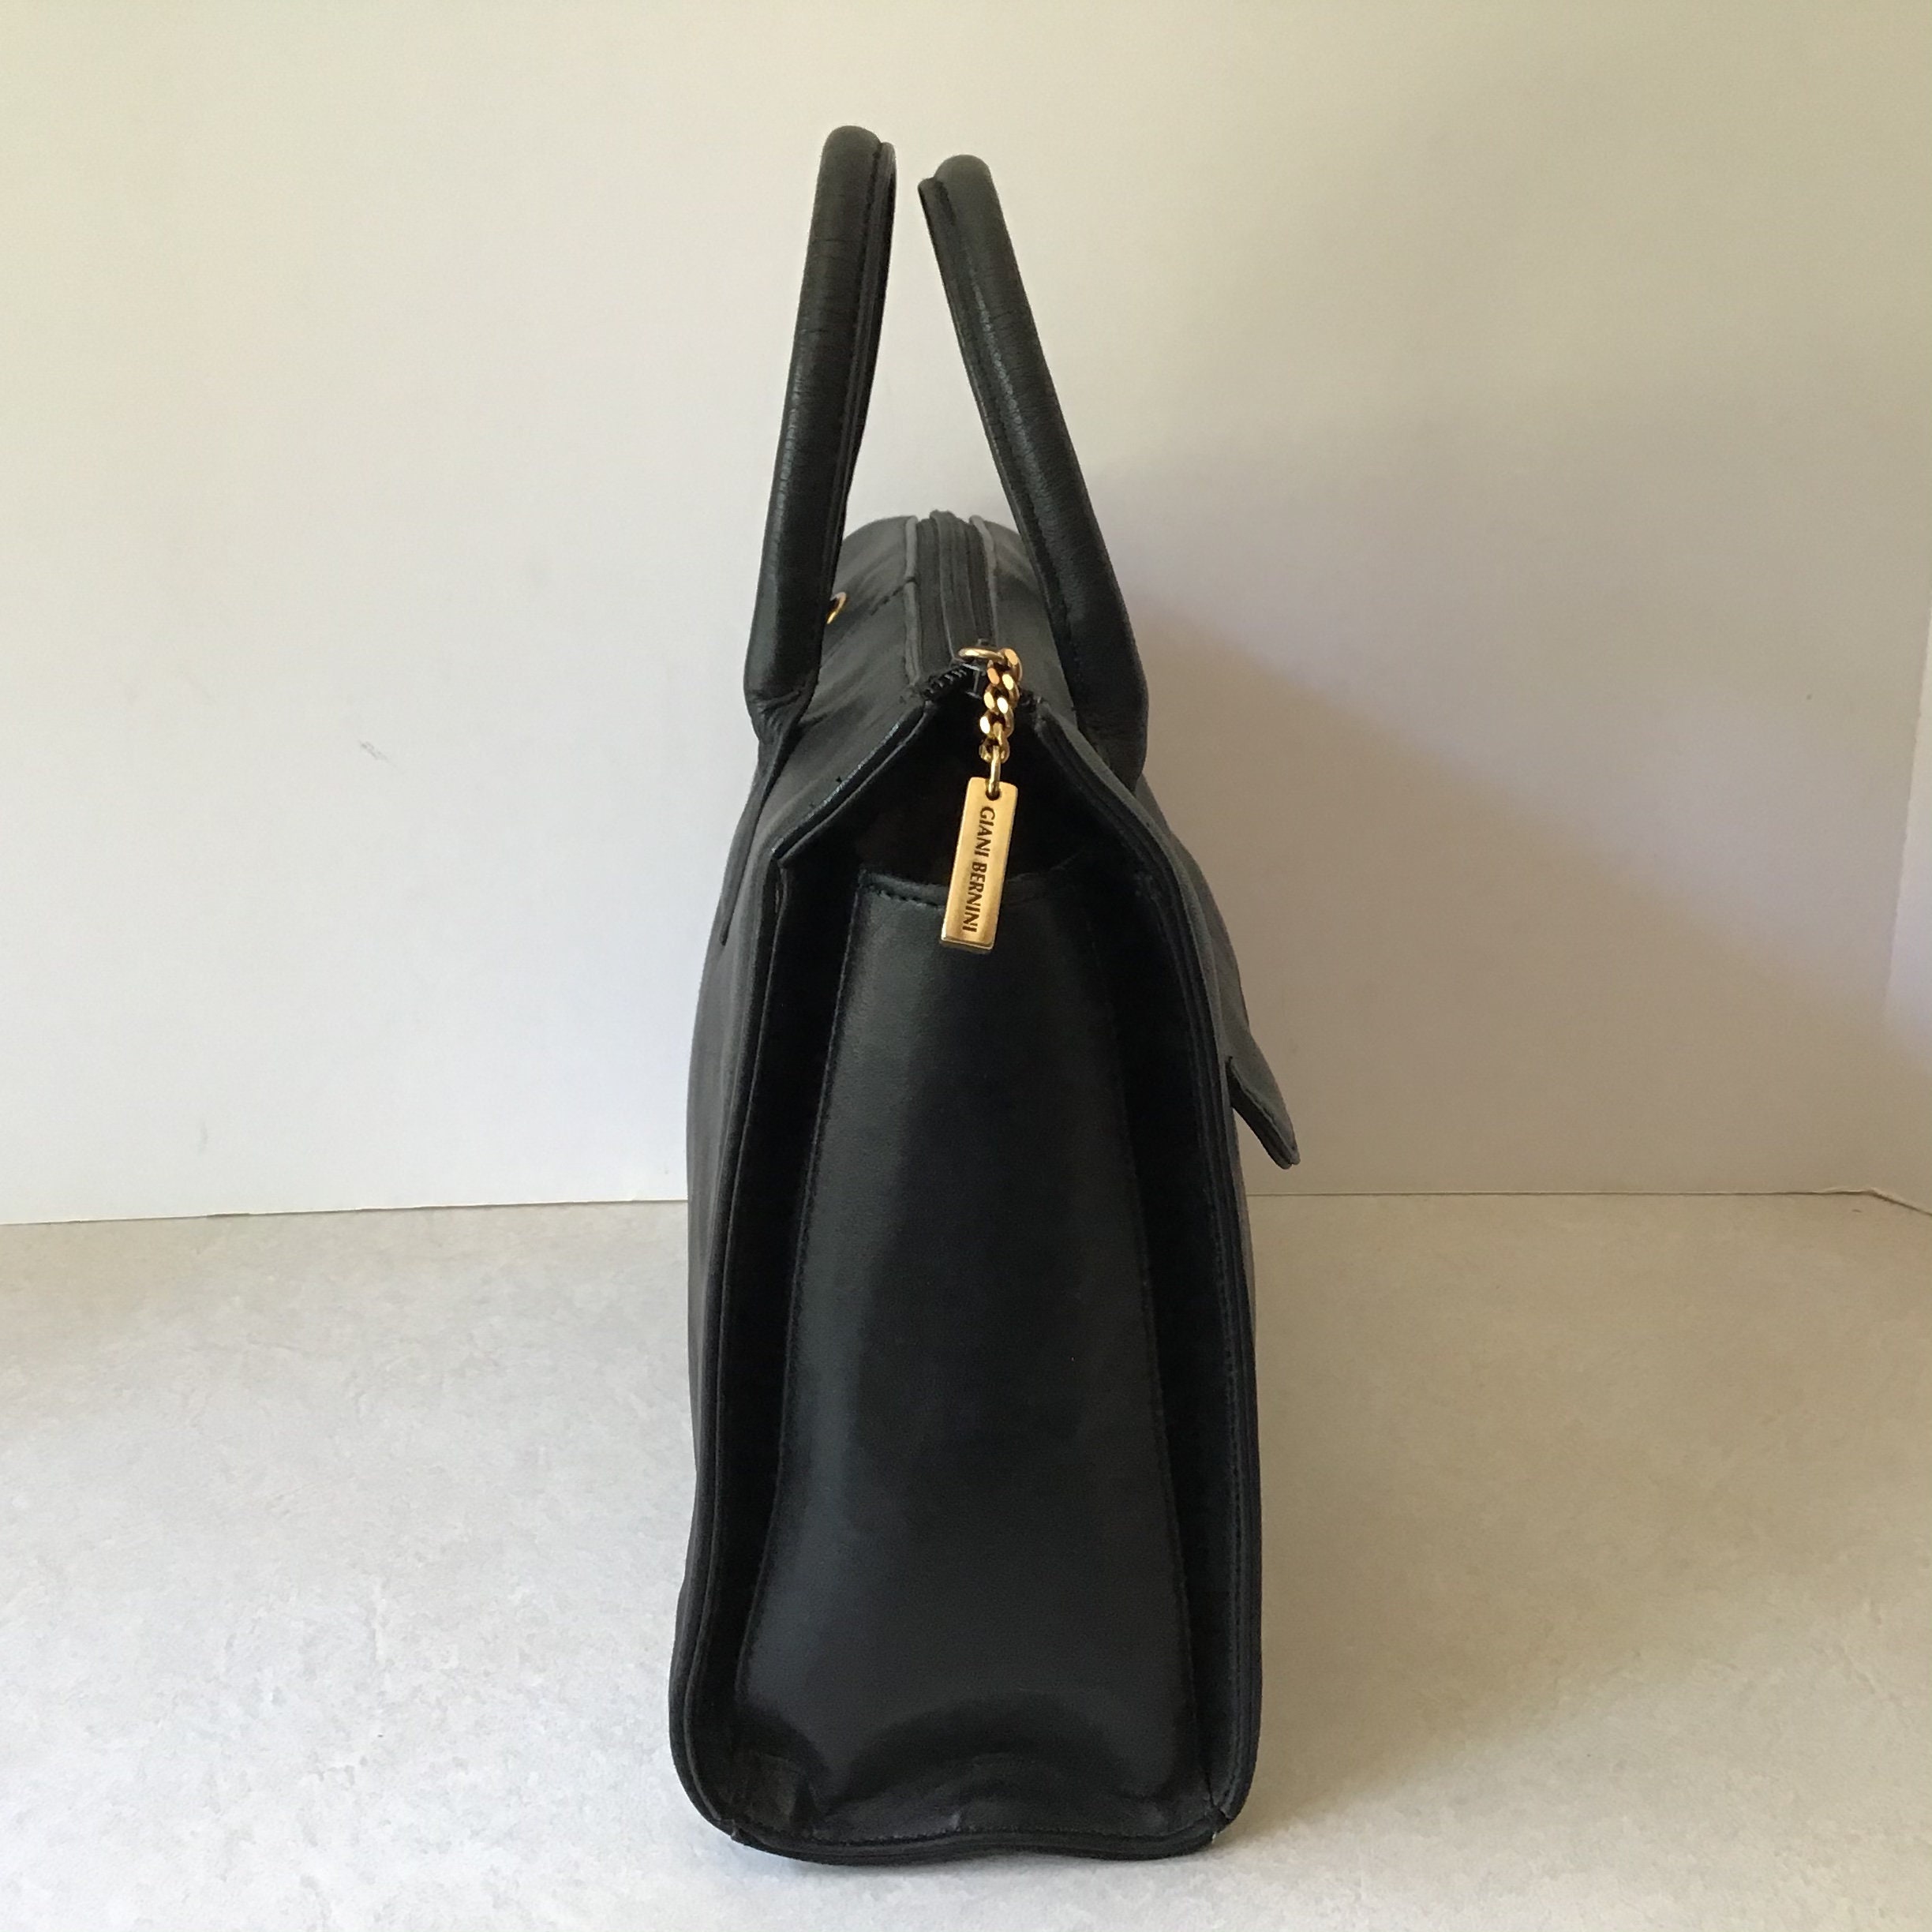 Giani Bernini leather purse | Leather purses, Purses, Shoulder bag